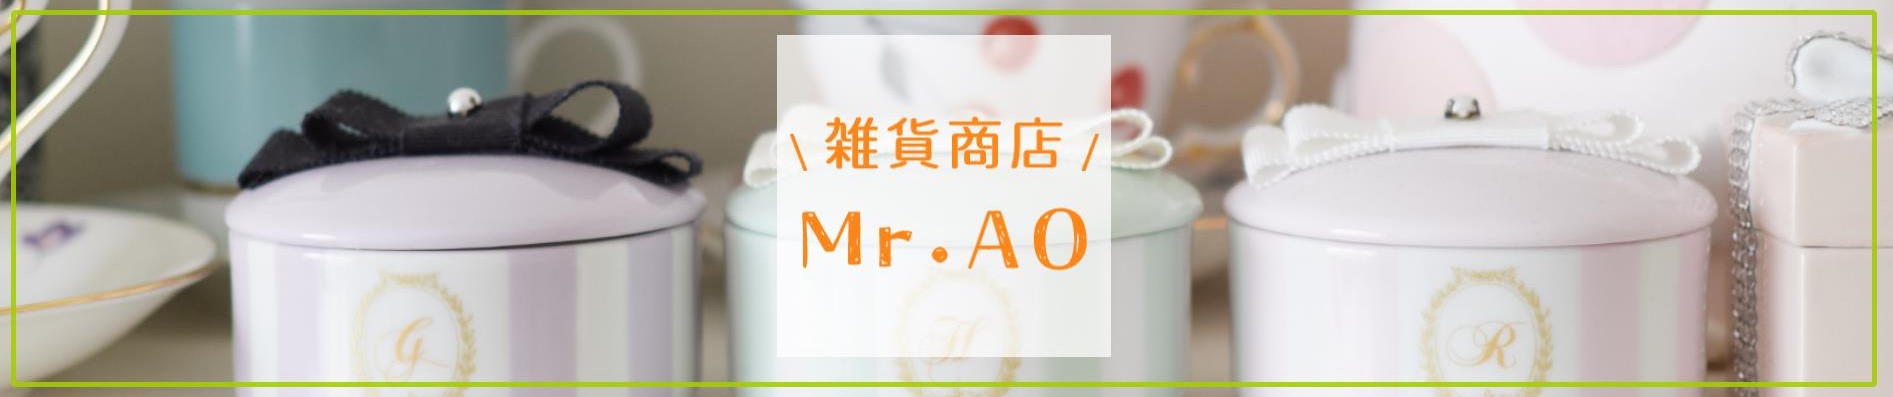 雑貨商店Mr.AO ヤフーショッピング店 ヘッダー画像